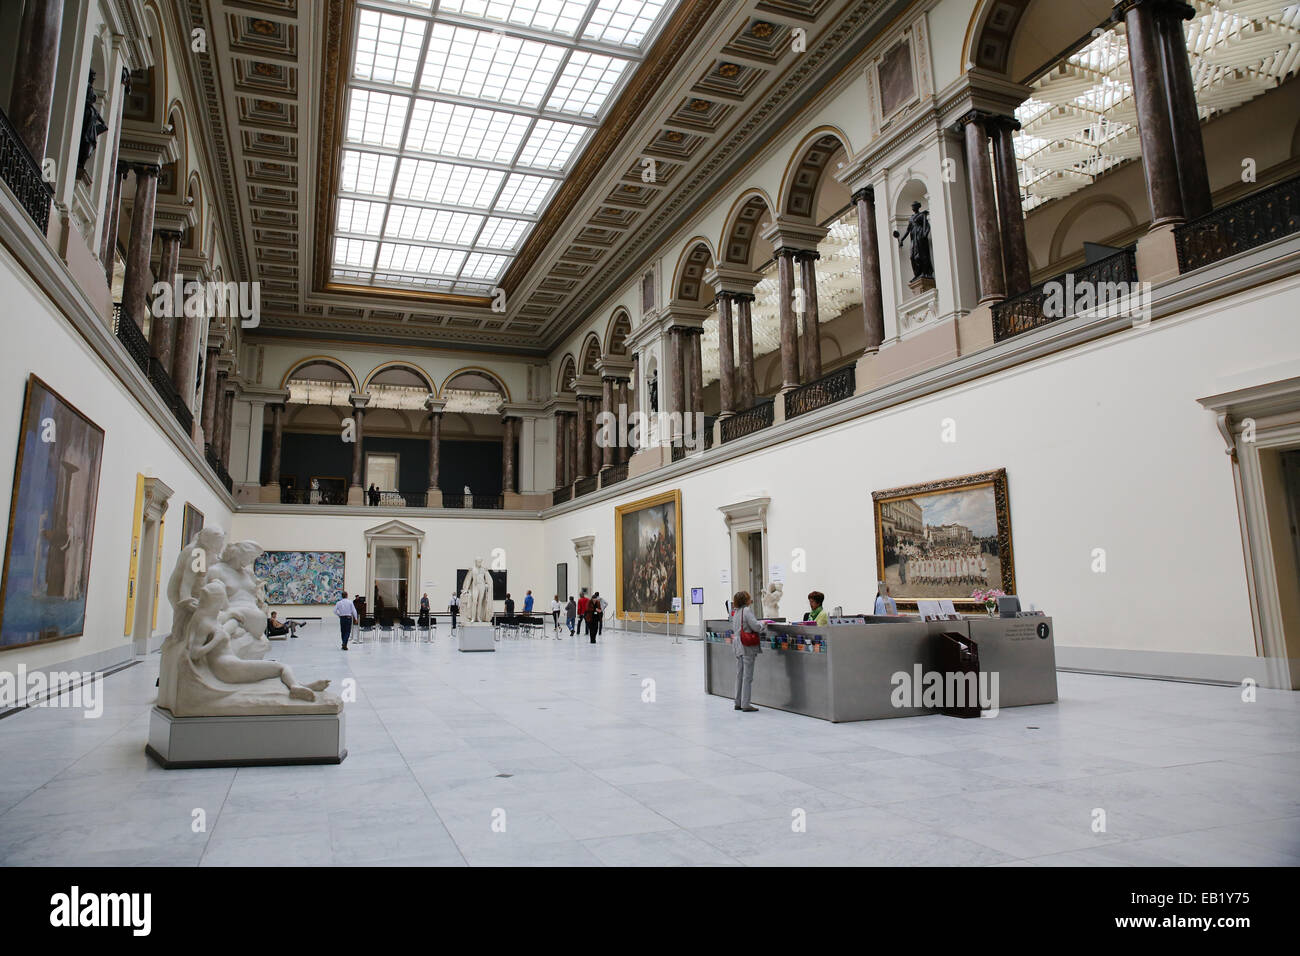 brussels 'museum of fine arts' Musées royaux des Beaux-Arts de Belgique Stock Photo